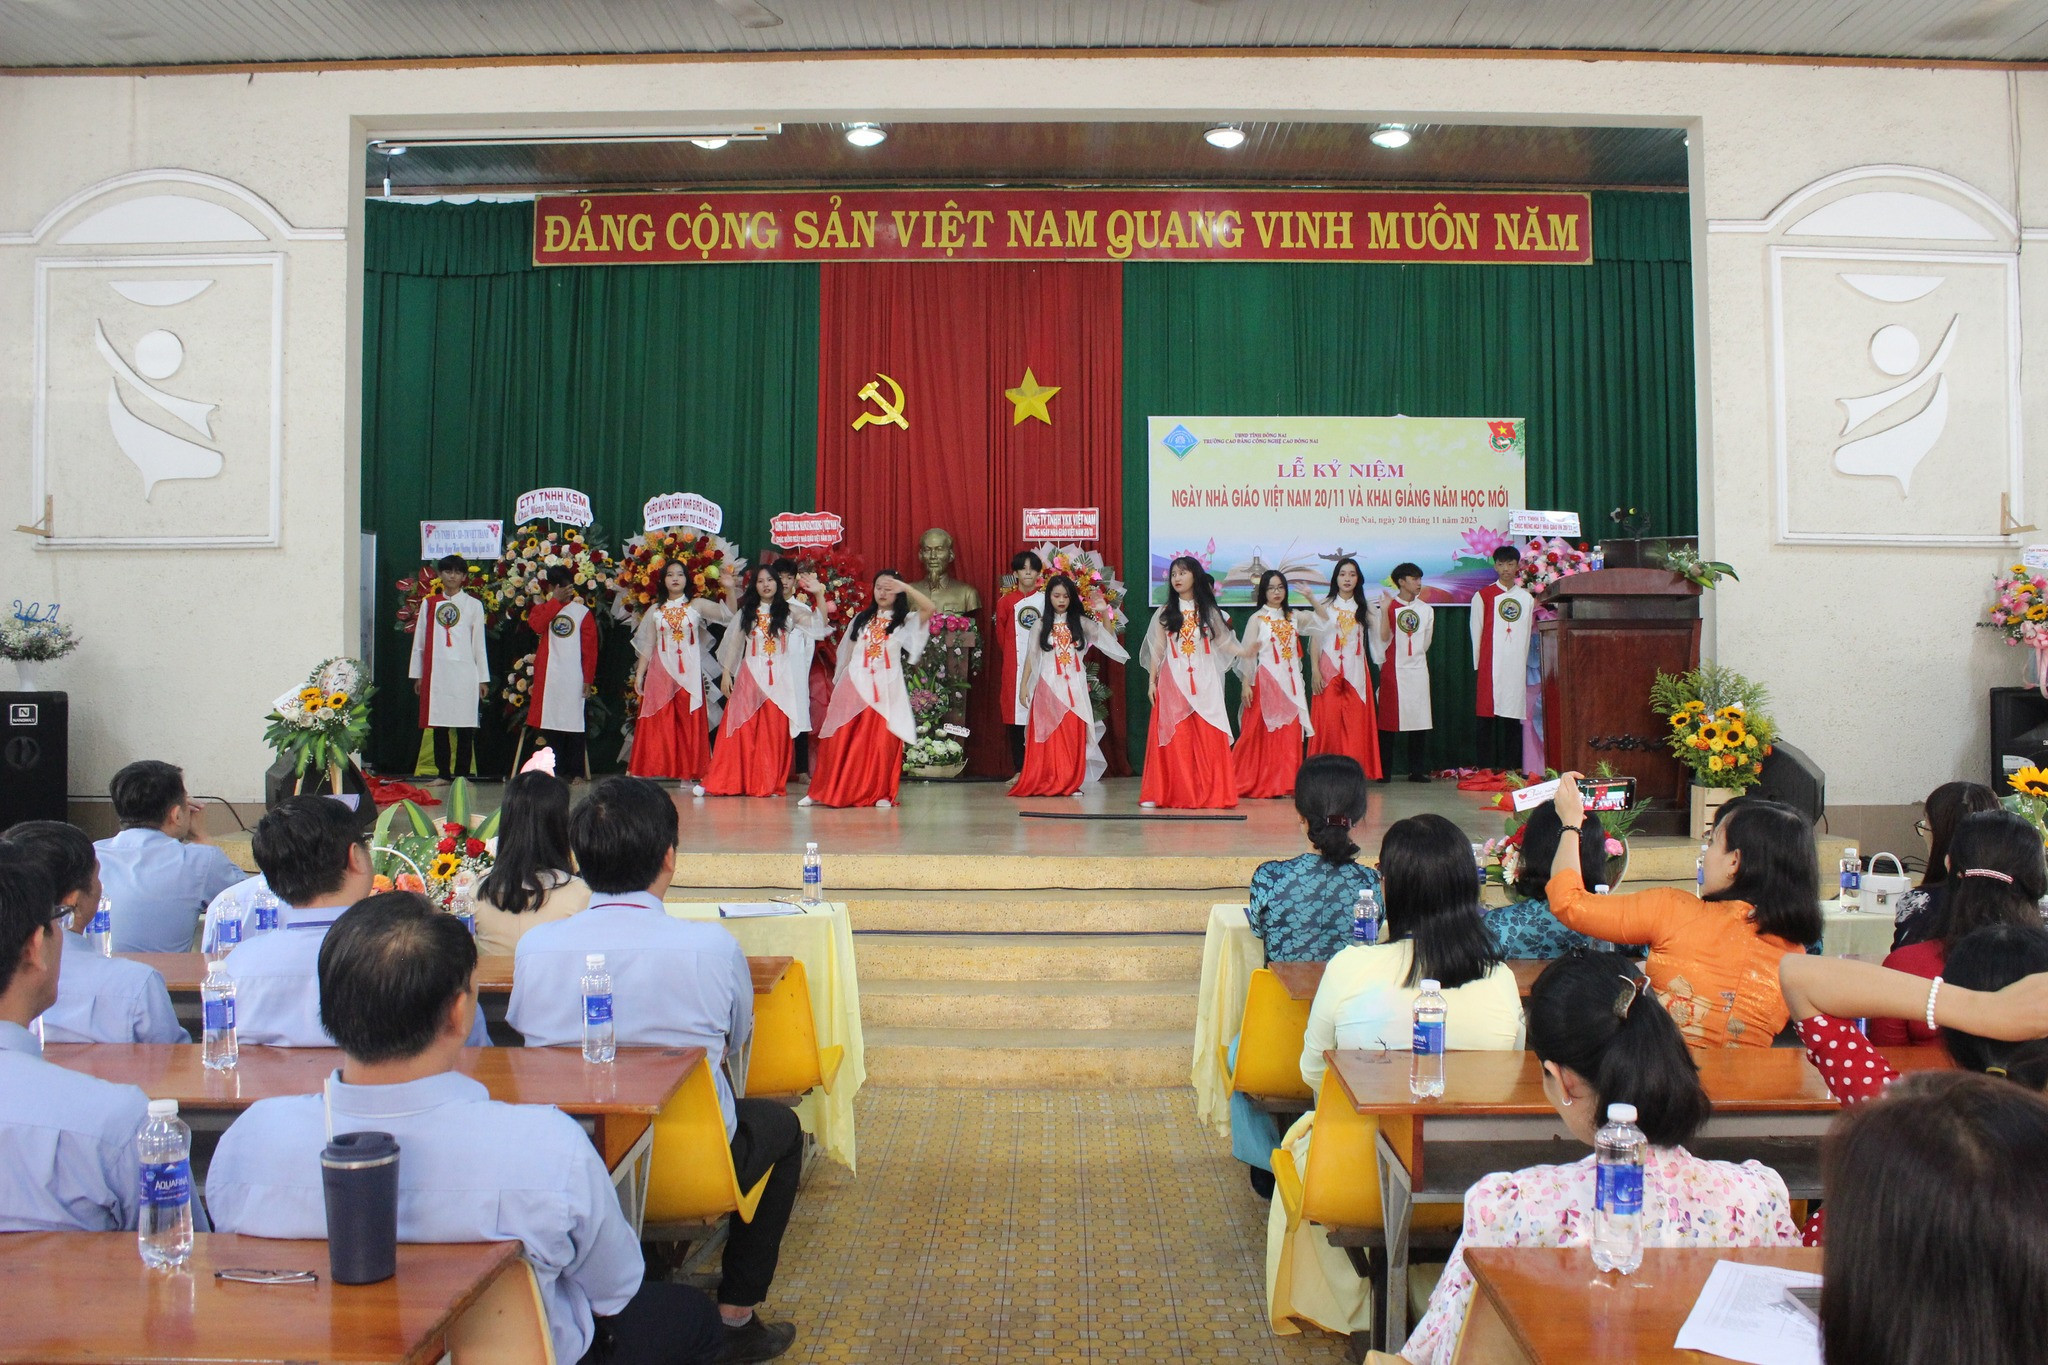 25. Cao đẳng Công nghệ Cao Đồng Nai - Hoạt động 4 (kỷ niệm ngày nhà giáo Việt Nam).jpg